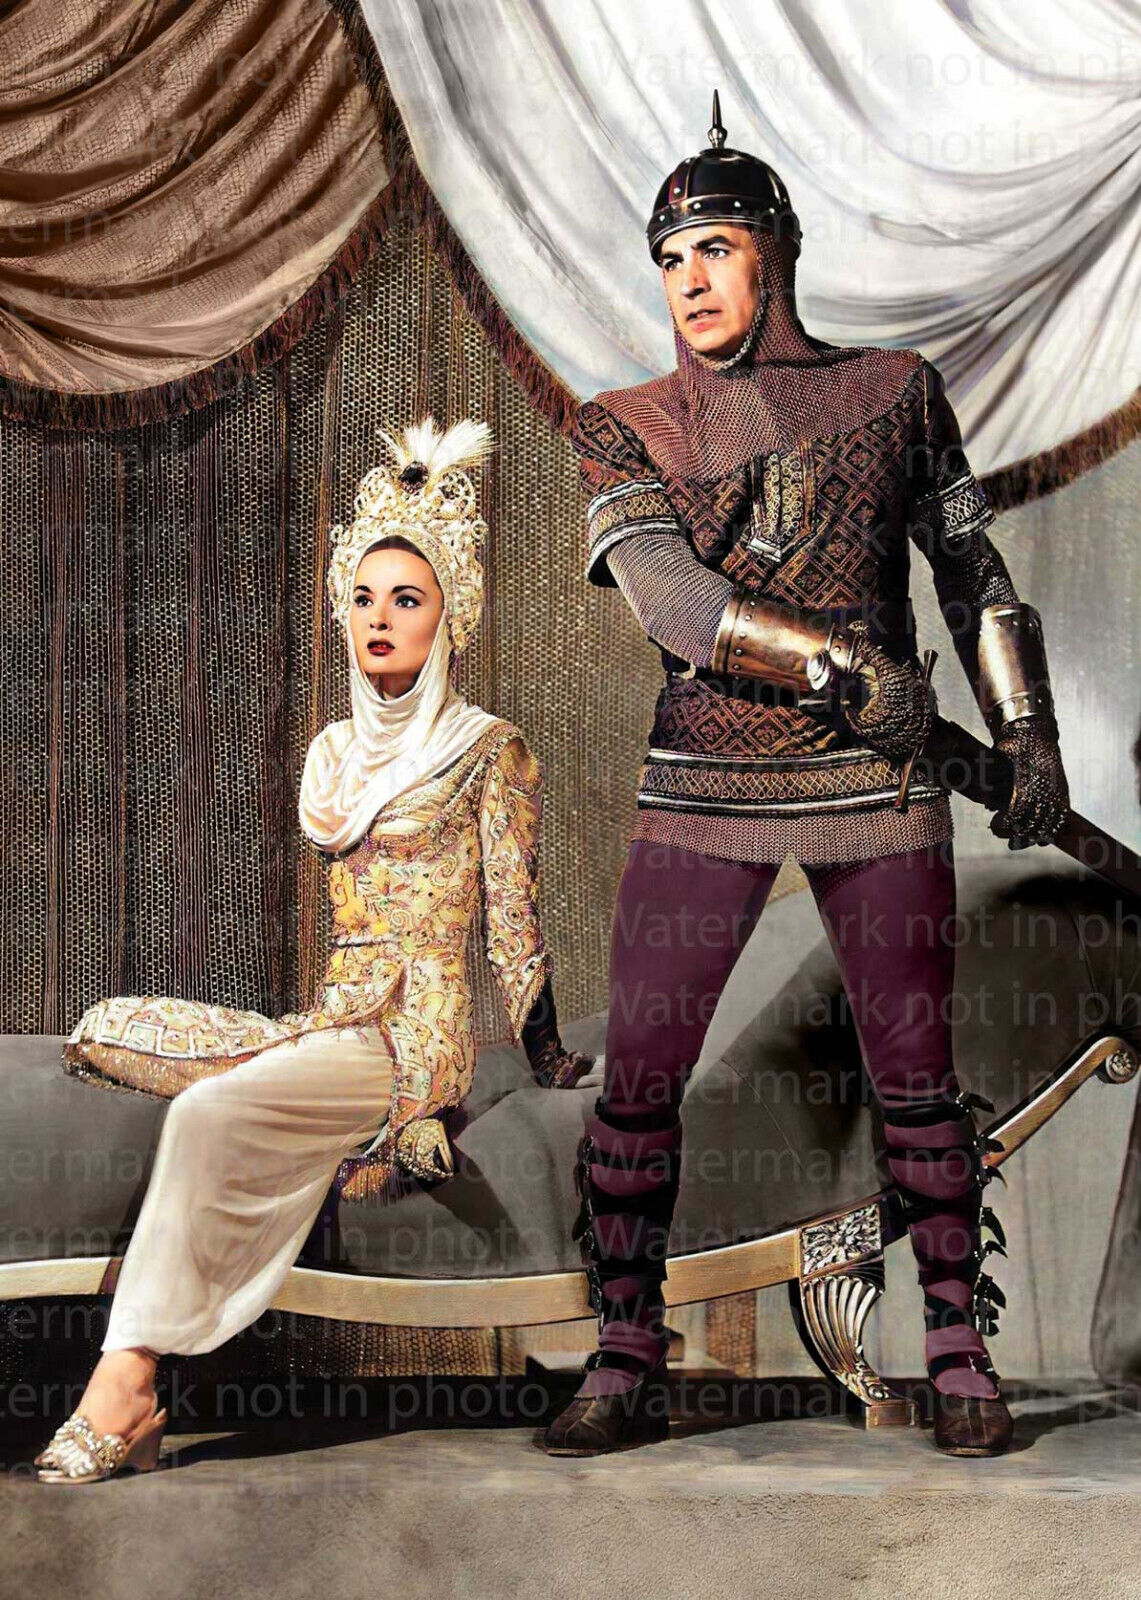 Ann Blyth & David Farrar in The Golden Horde RARE COLOR Photo 621